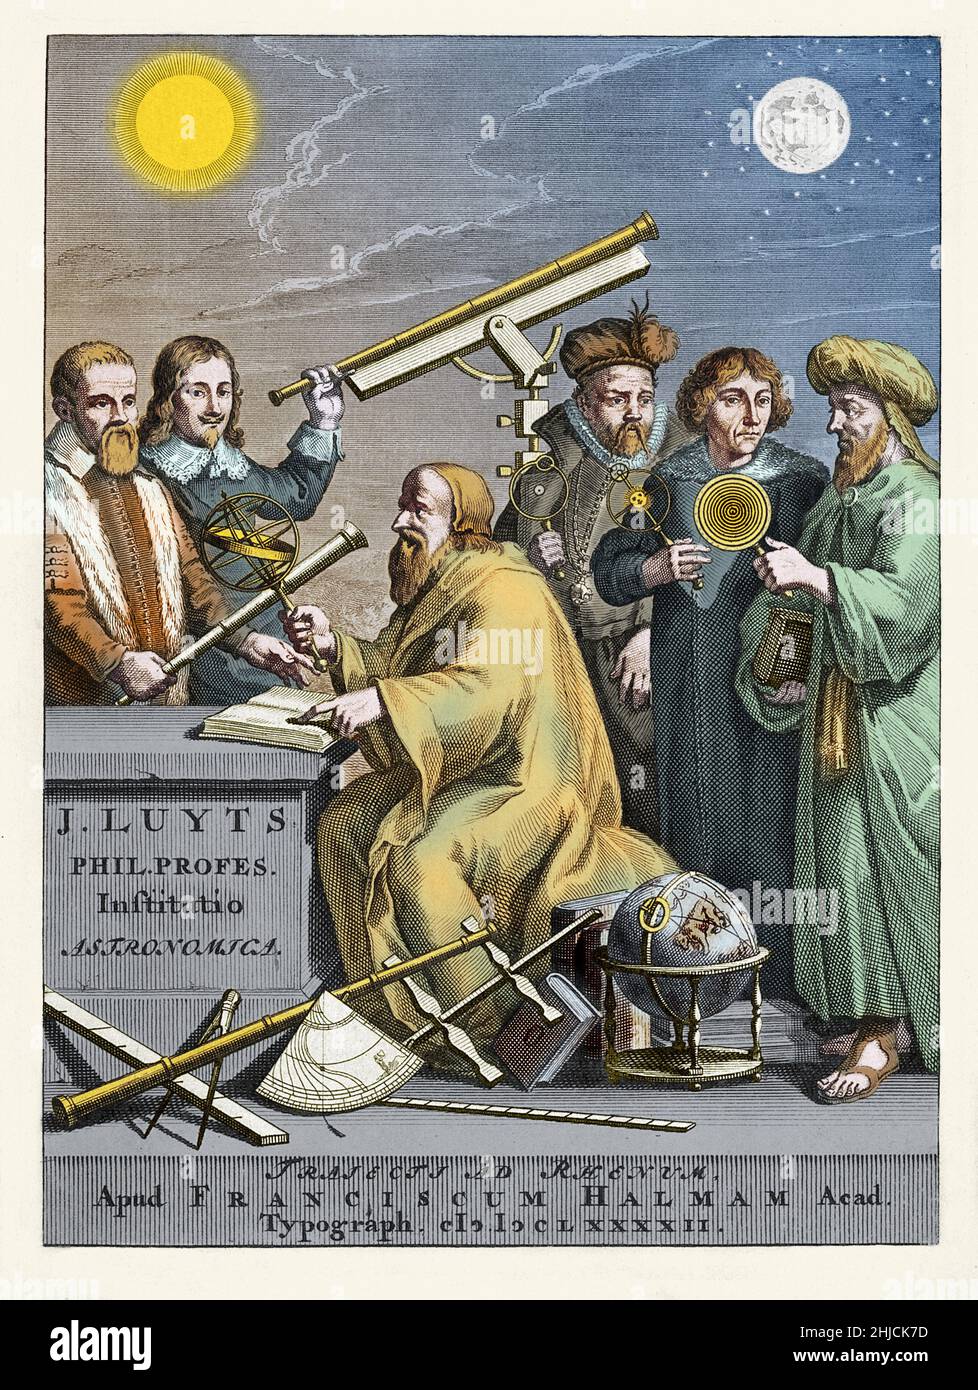 Berühmte Astronomen der Geschichte, eine Farbgebung eines Frontispiz-Stichs von Jan Luyts‚Äô Astronomica Institutio, 1692. Die Figur in der Mitte kann der antike griechische Astronom Hipparchus oder eine Figur von Luyts selbst sein. Im Hintergrund von links nach rechts: Galileo Galilei (1564-1642), Johannes Hevelius (1611-1687), Tycho Brahe (1546-1601), Nicolaus Copernicus (1473-1543) und Ptolemäus (100-c.‚Äâ170). Frontispiz-Stich von J. Mulder nach G. Hoet, von Jan Luyts‚Äôs Astronomica Institutio, 1692. Stockfoto